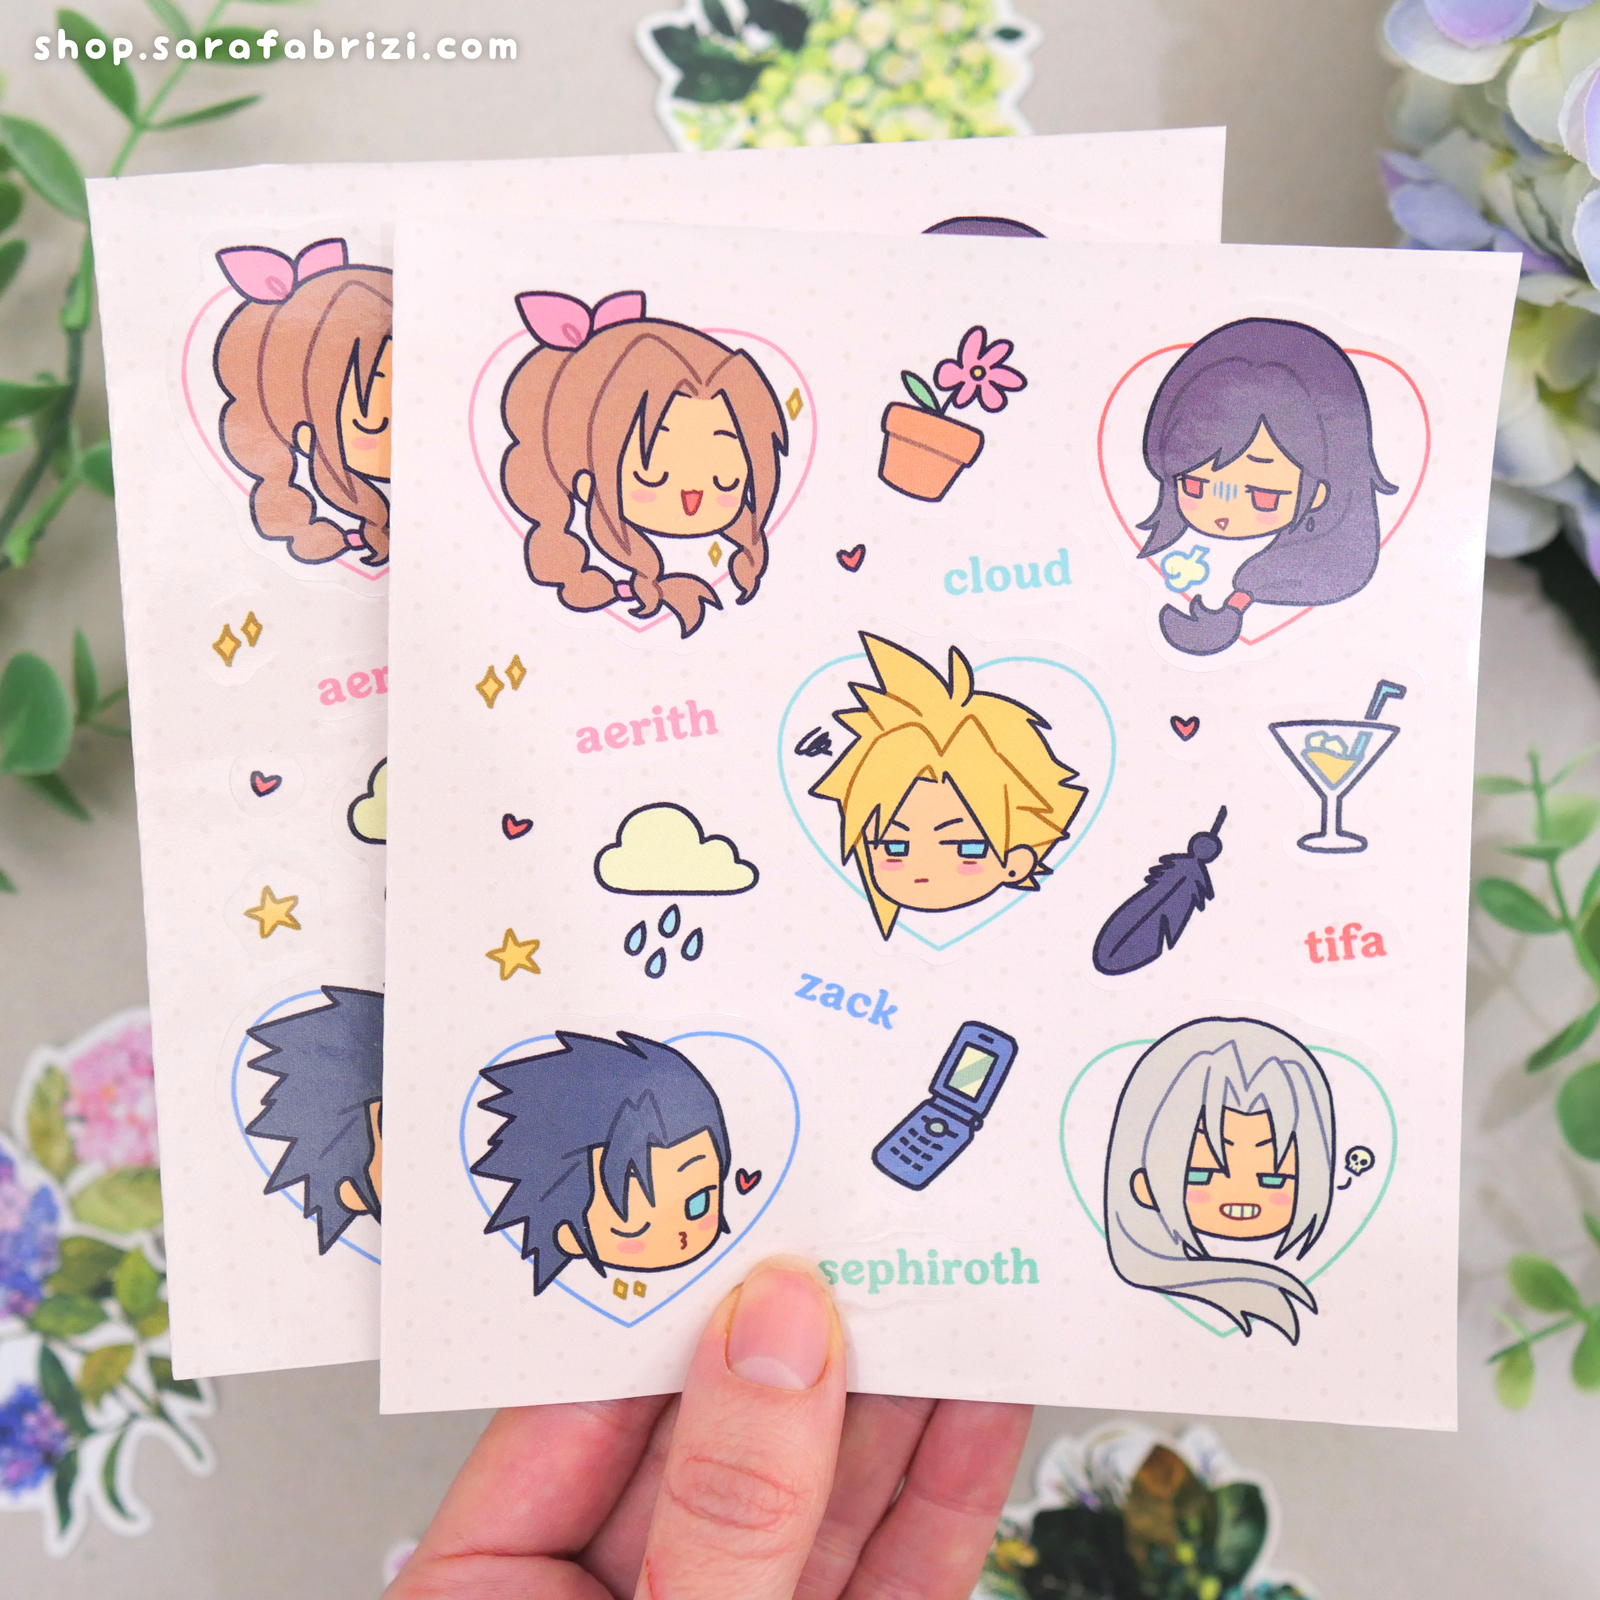 Final Fantasy Sprites | Sticker